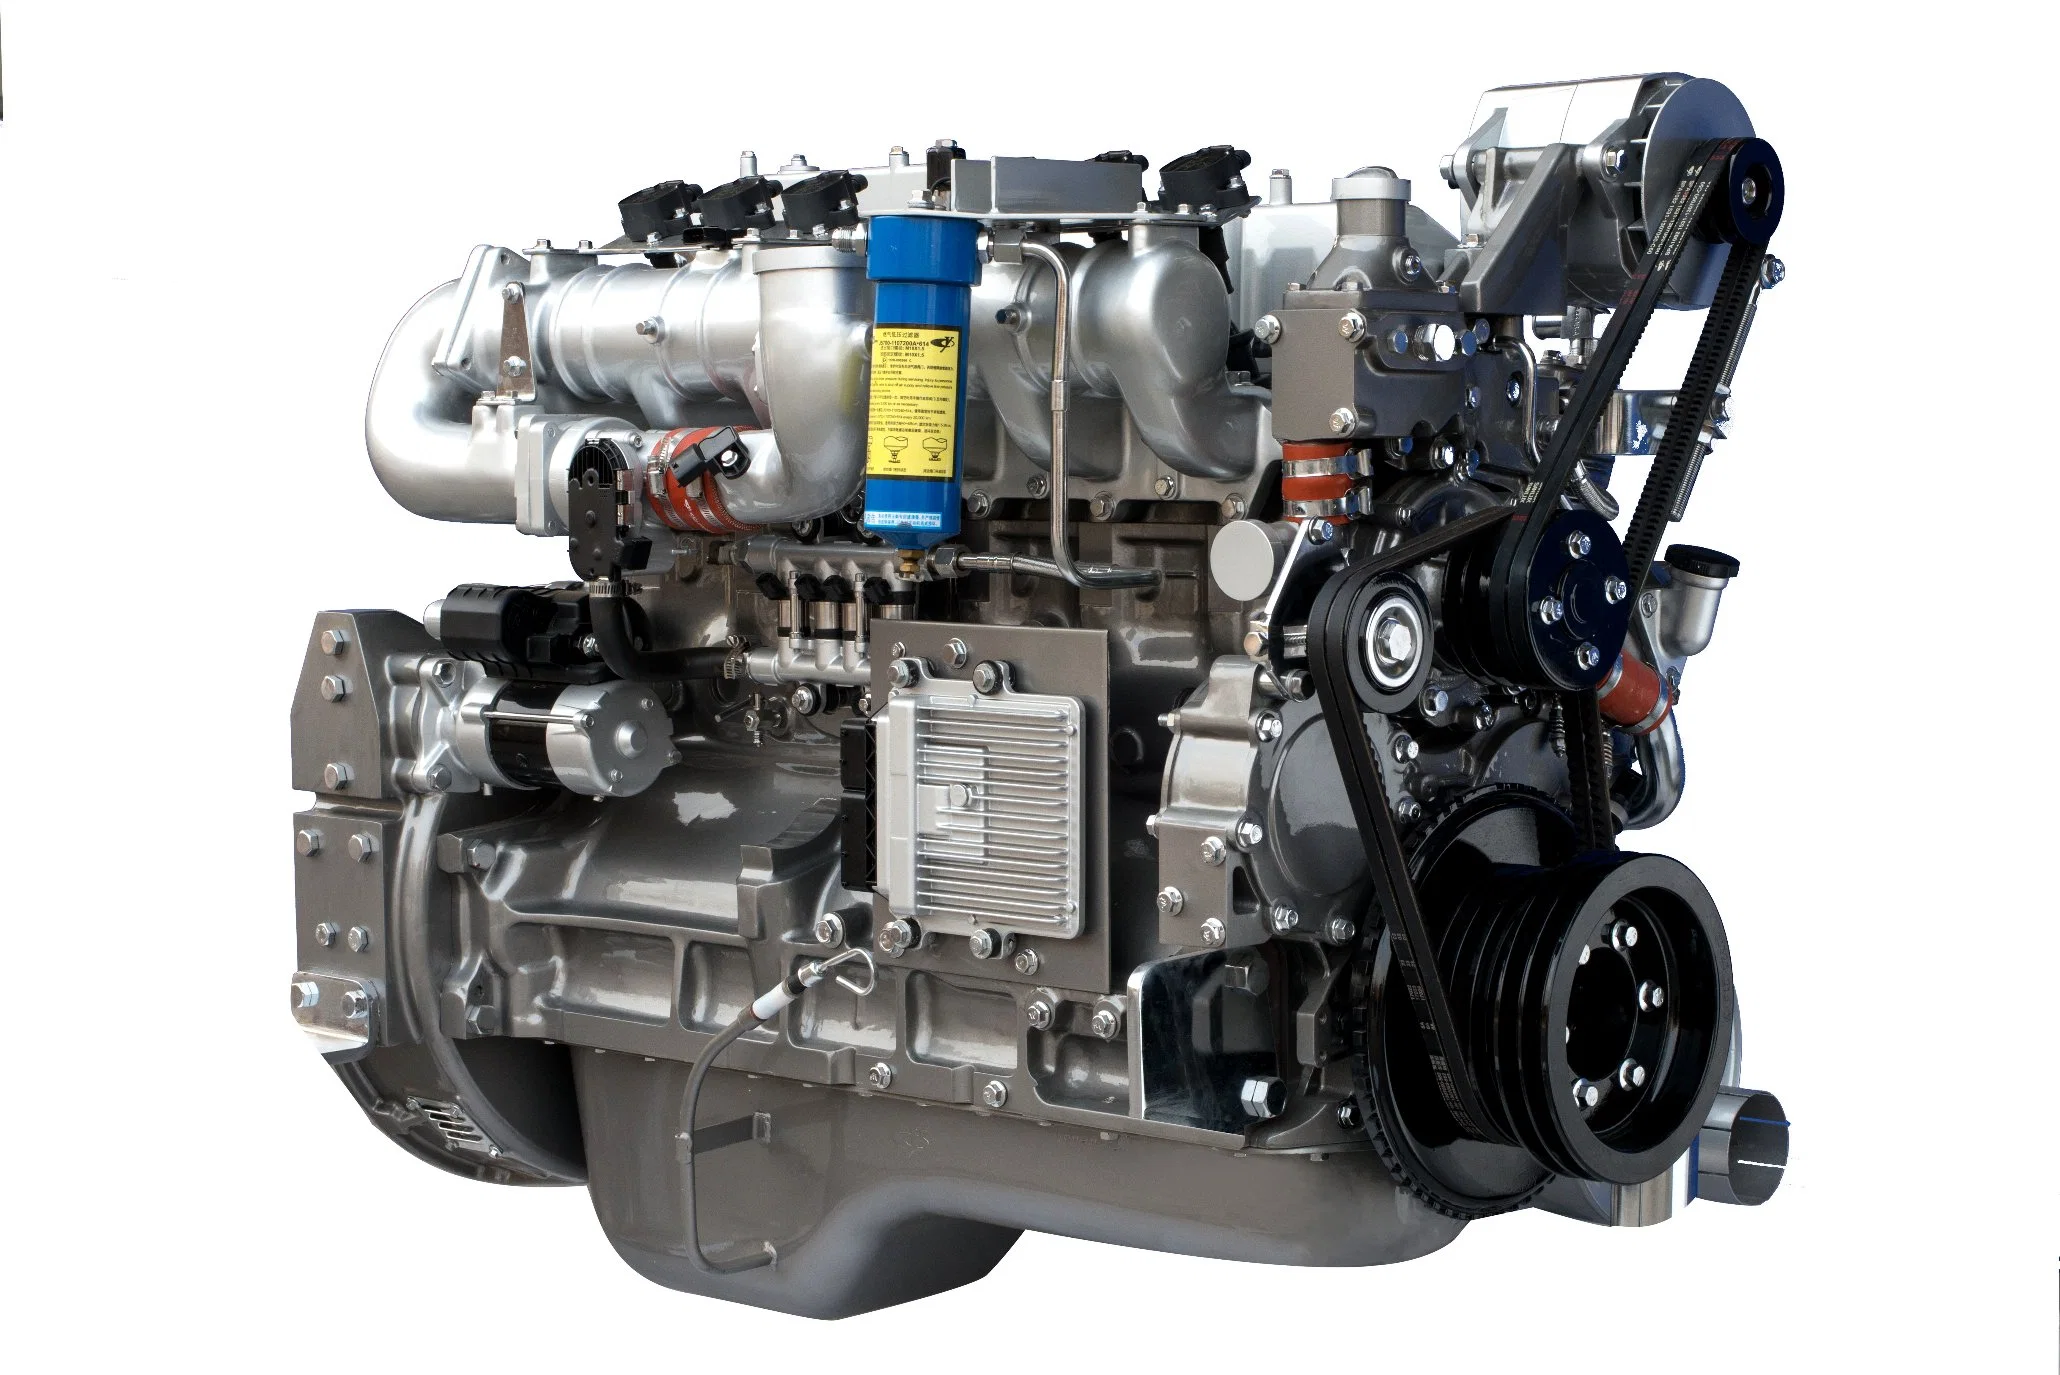 Motor a Gás Clássico Yuchai YC6GN de 6 Cilindros de Alta Qualidade, com Emissão Euro 5, Boa Performance de Potência, Boa Economia, Alta Confiabilidade, Baixa Vibração e Ruído.